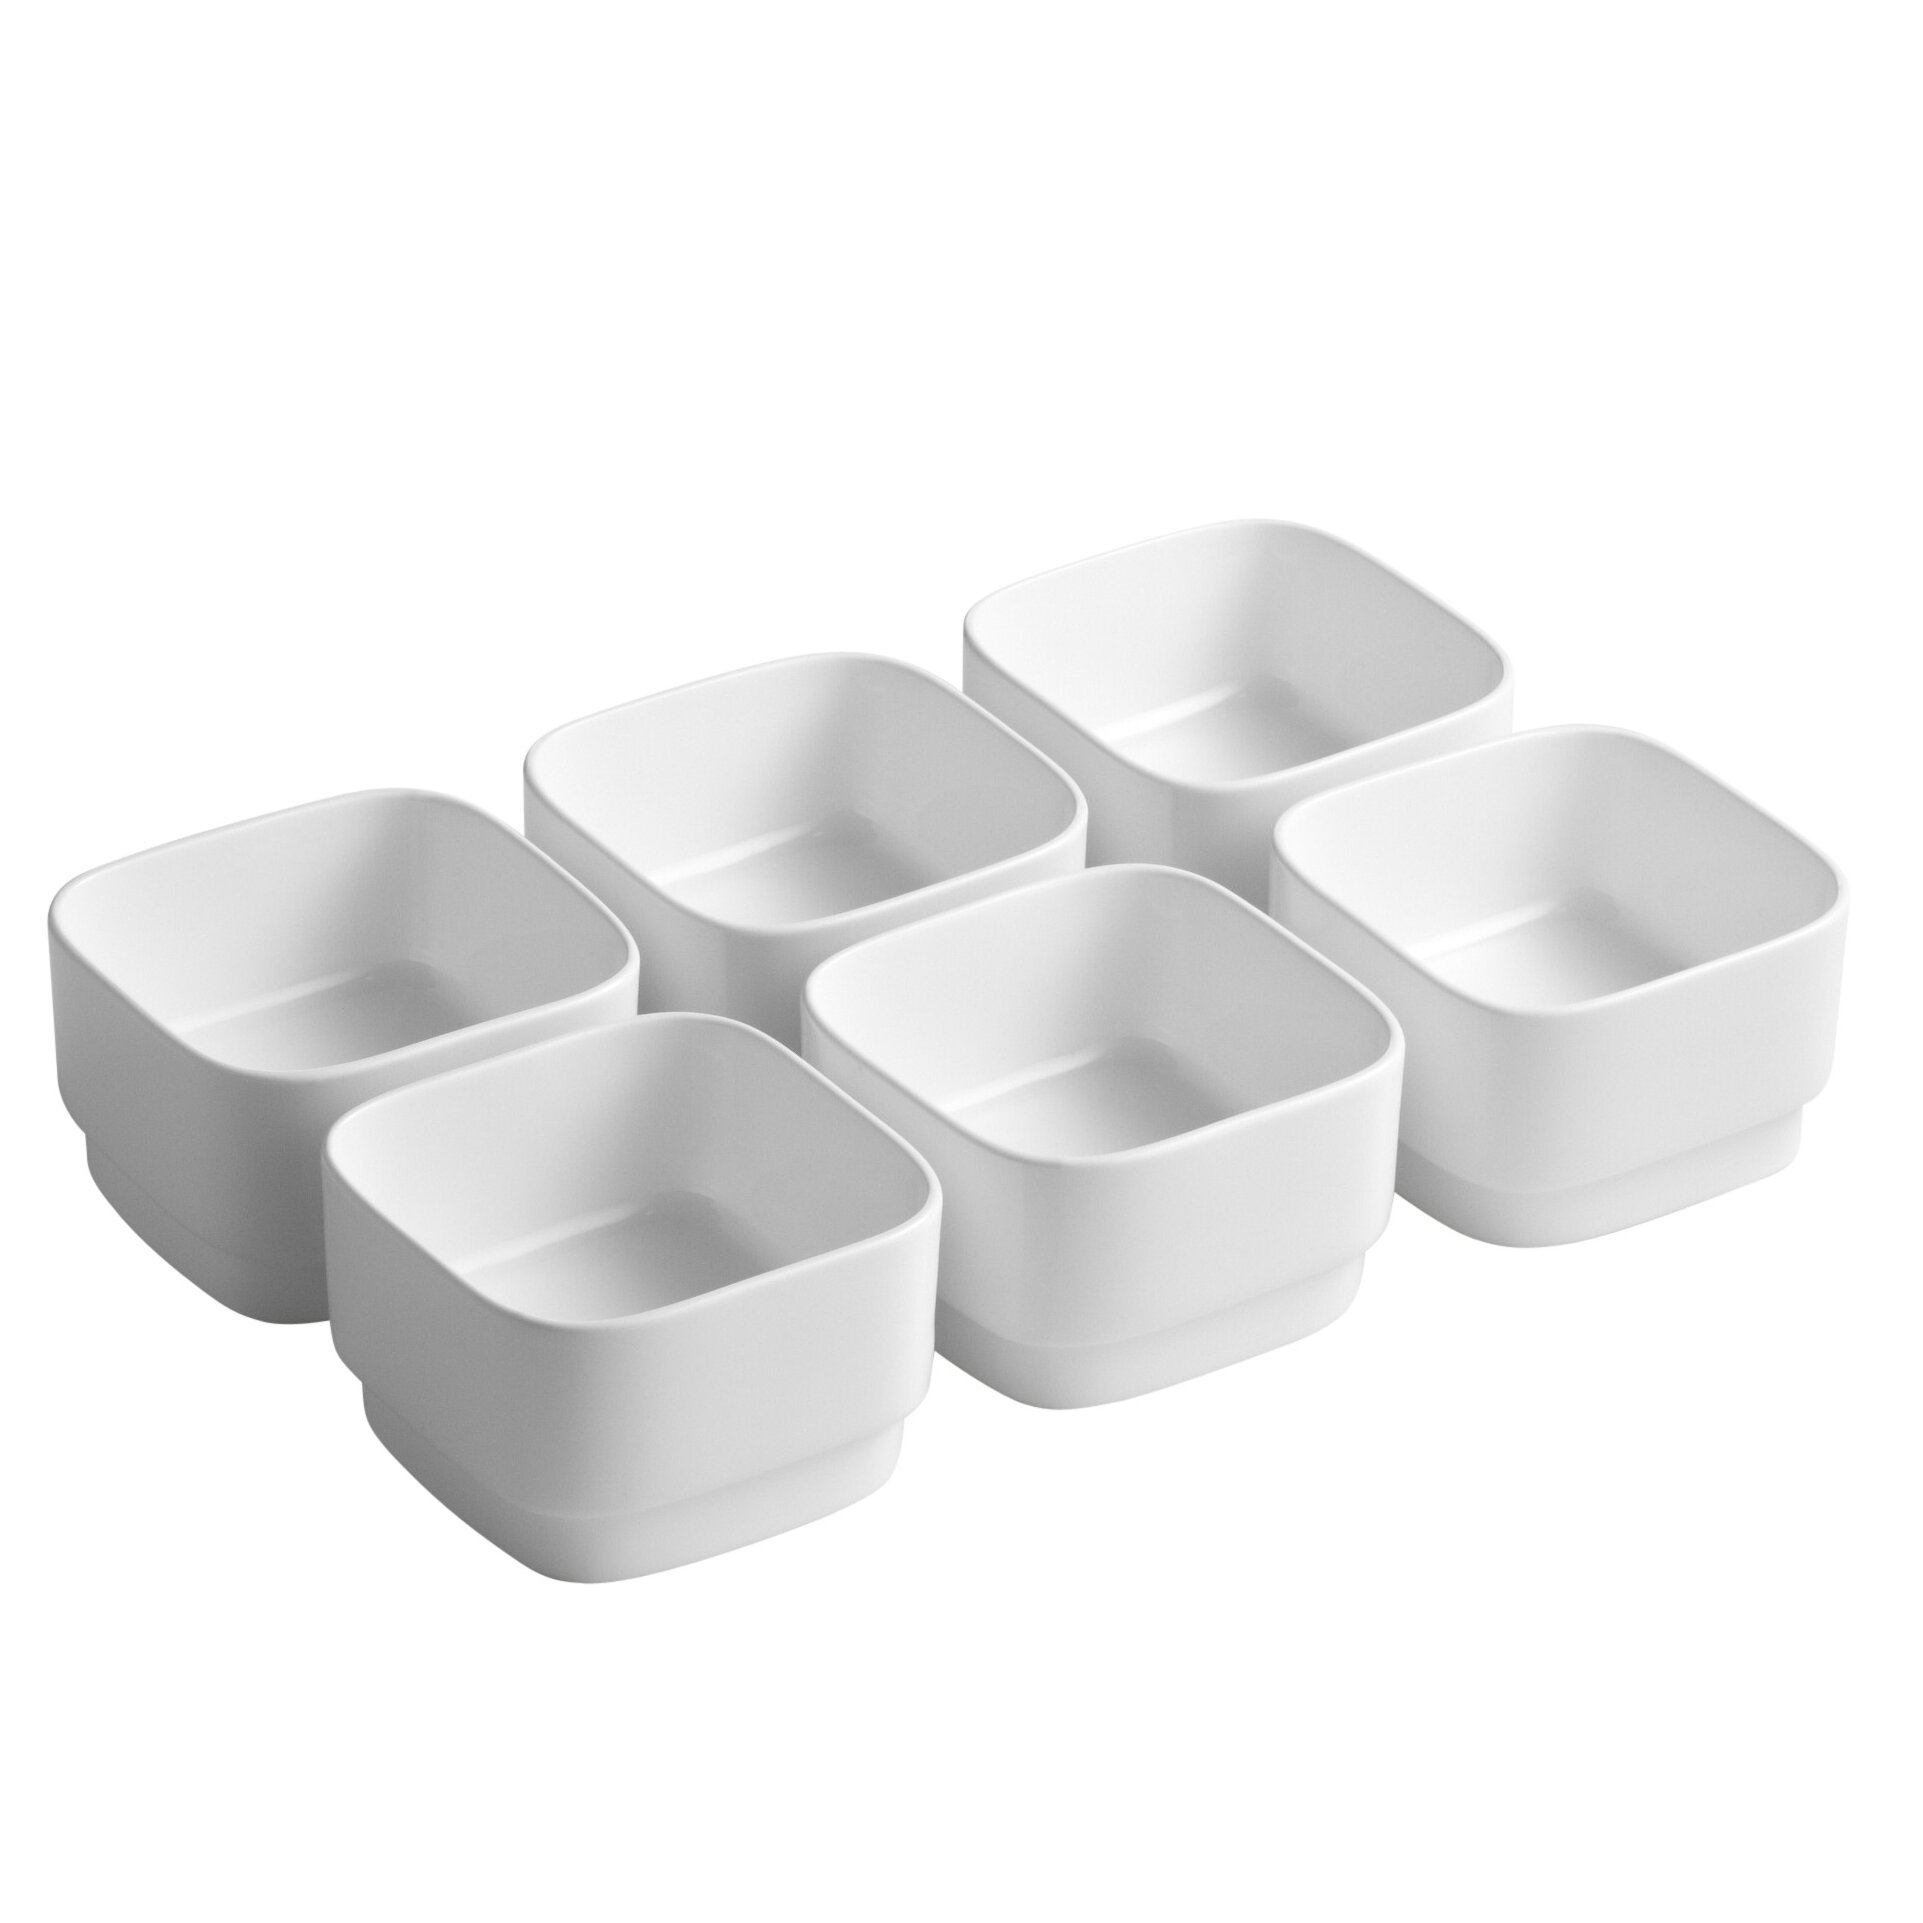 https://assets.wfcdn.com/im/05206452/compr-r85/1246/12463200/kohler-porcelain-prep-bowl-set.jpg